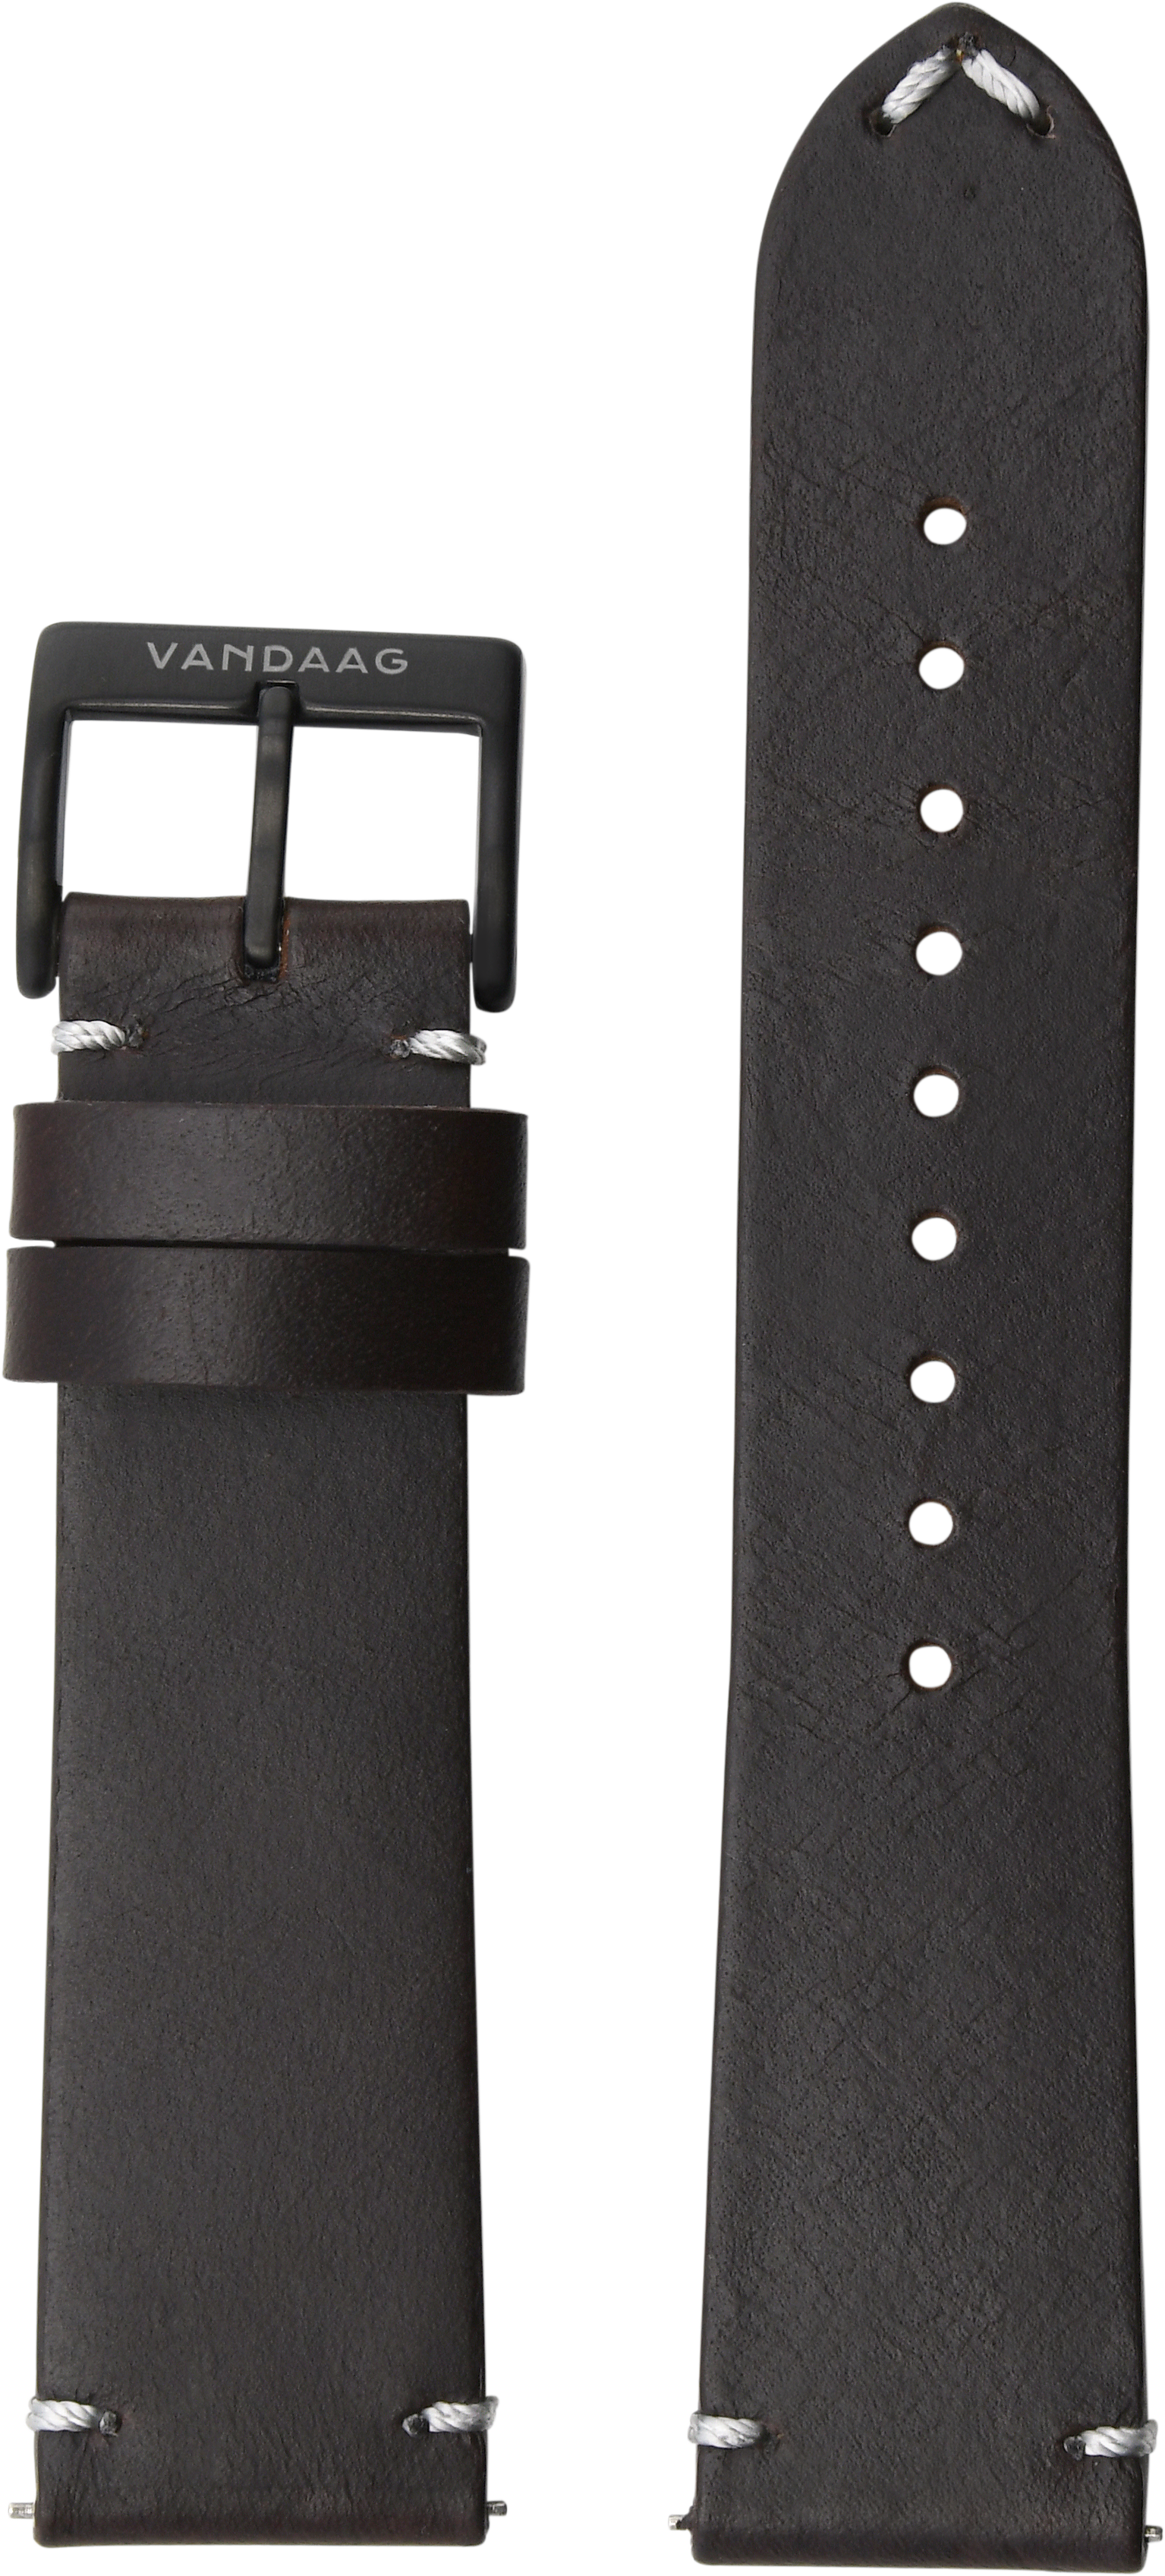 Horween-leather strap, dark brown